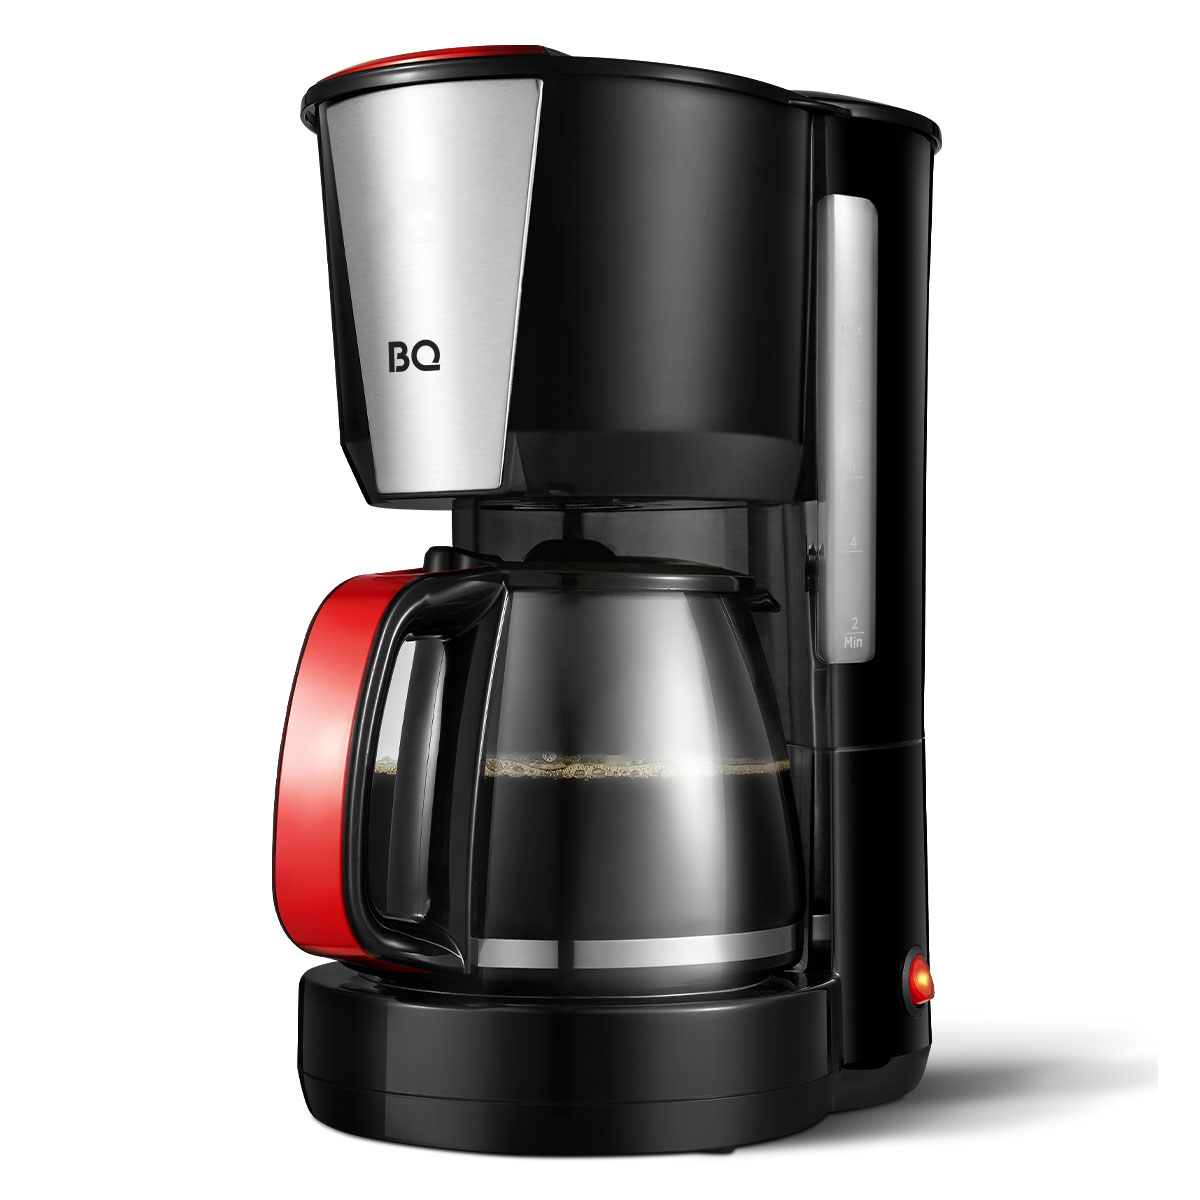 Кофеварка капельного типа BQ CM1008 красный, черный кофеварка капельного типа bq cm1008 красный